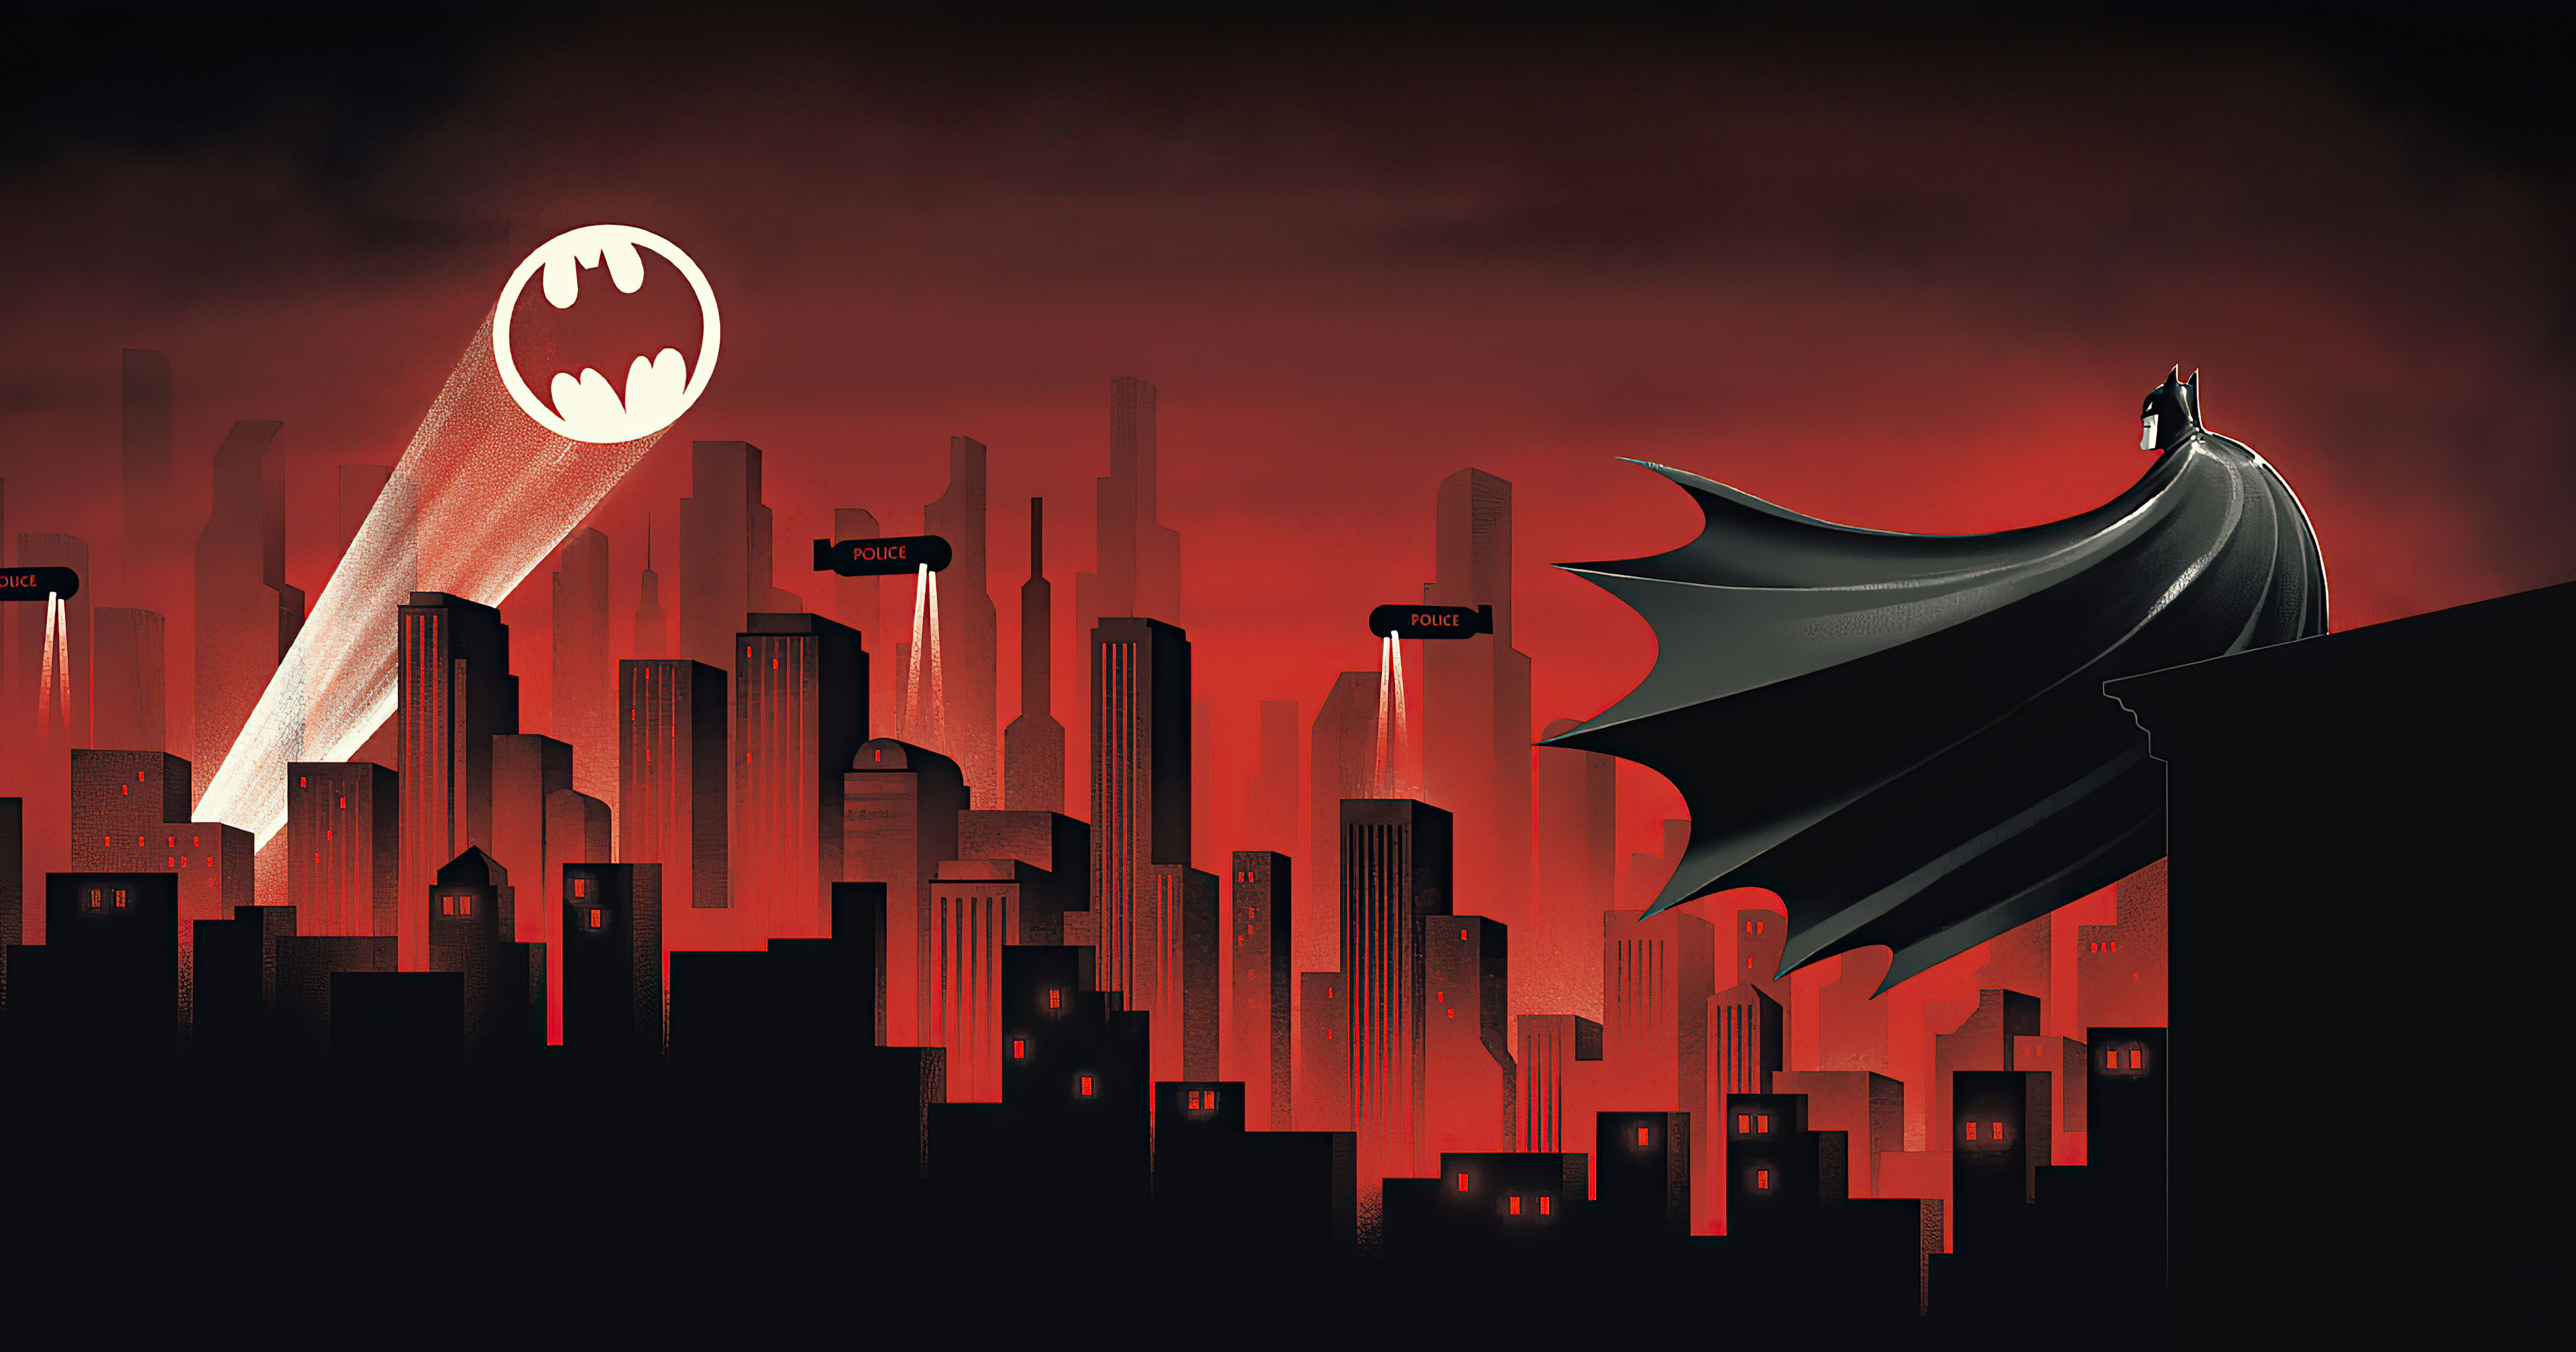 gotham city, comics, batman, bat signal, dc comics